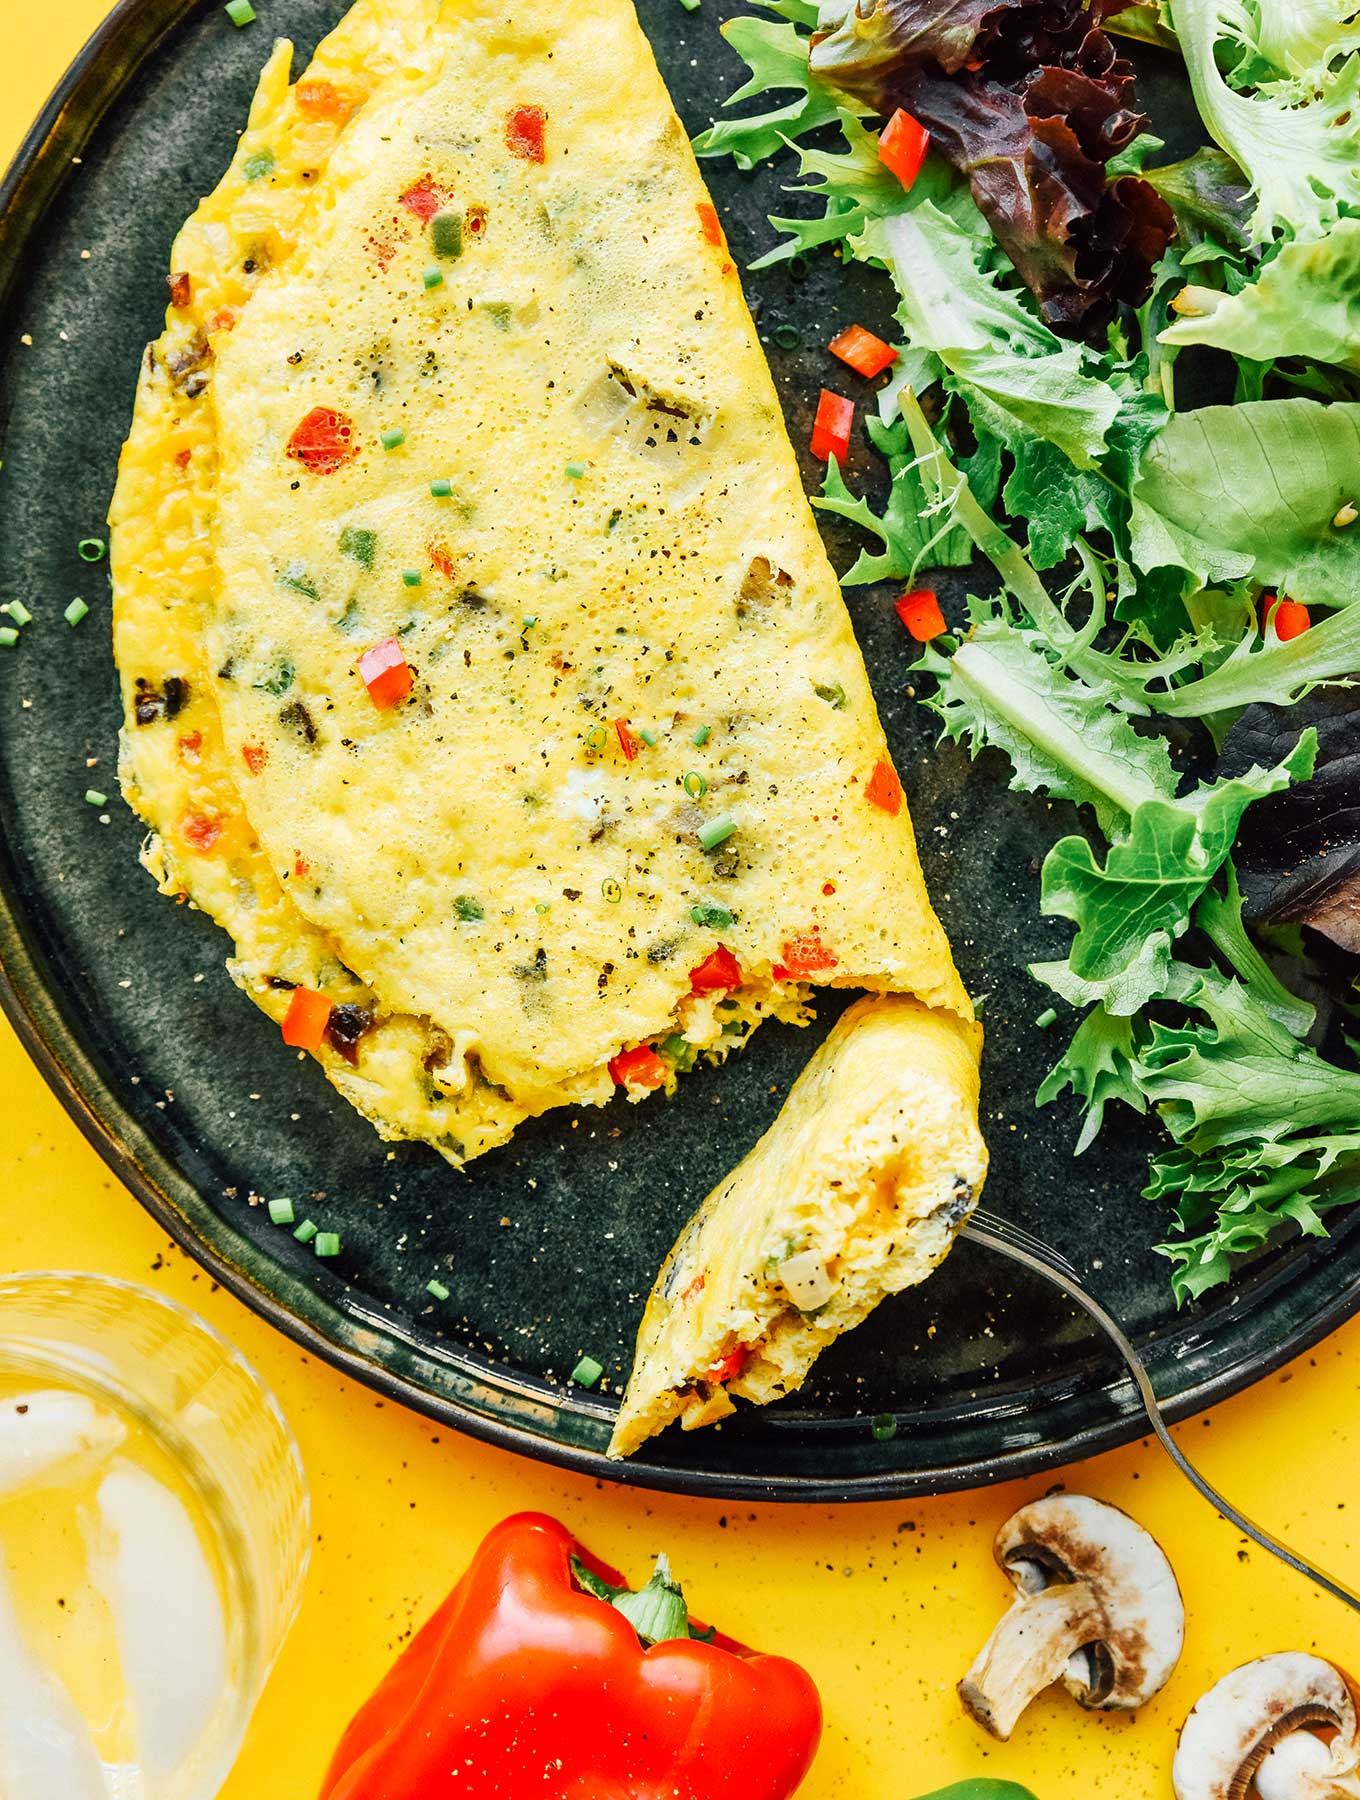 https://www.liveeatlearn.com/wp-content/uploads/2020/12/vegetarian-denver-omelette-vert.jpg